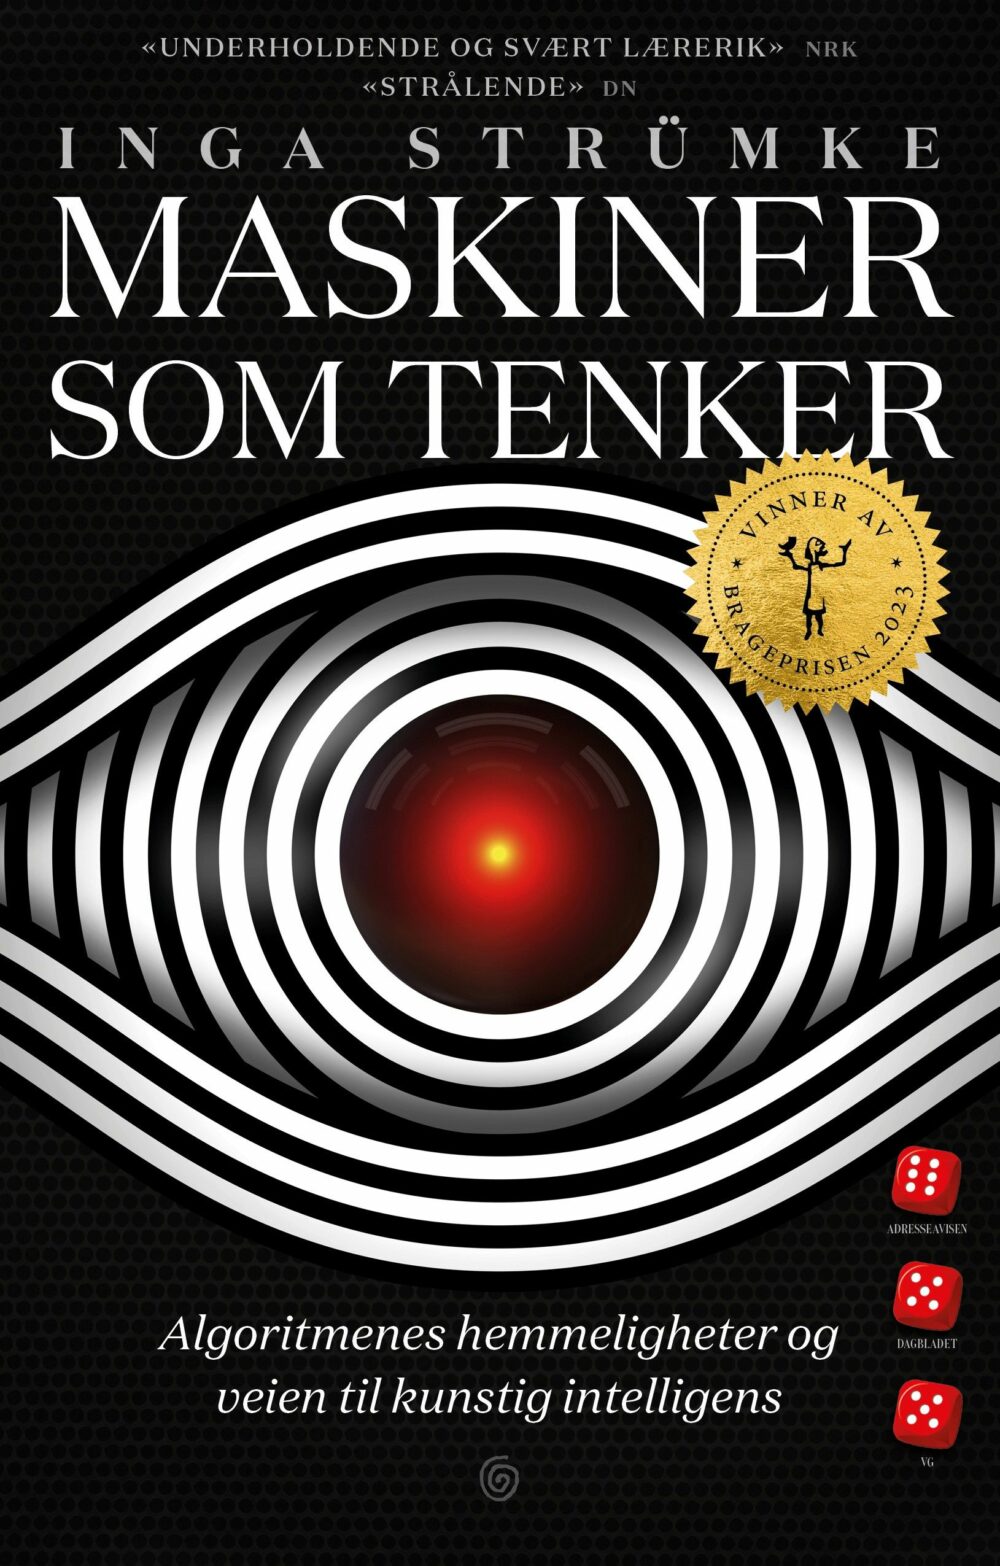 Inga Strümke: Maskiner som tenker (Hardcover, Norwegian language, Kagge Forlag)